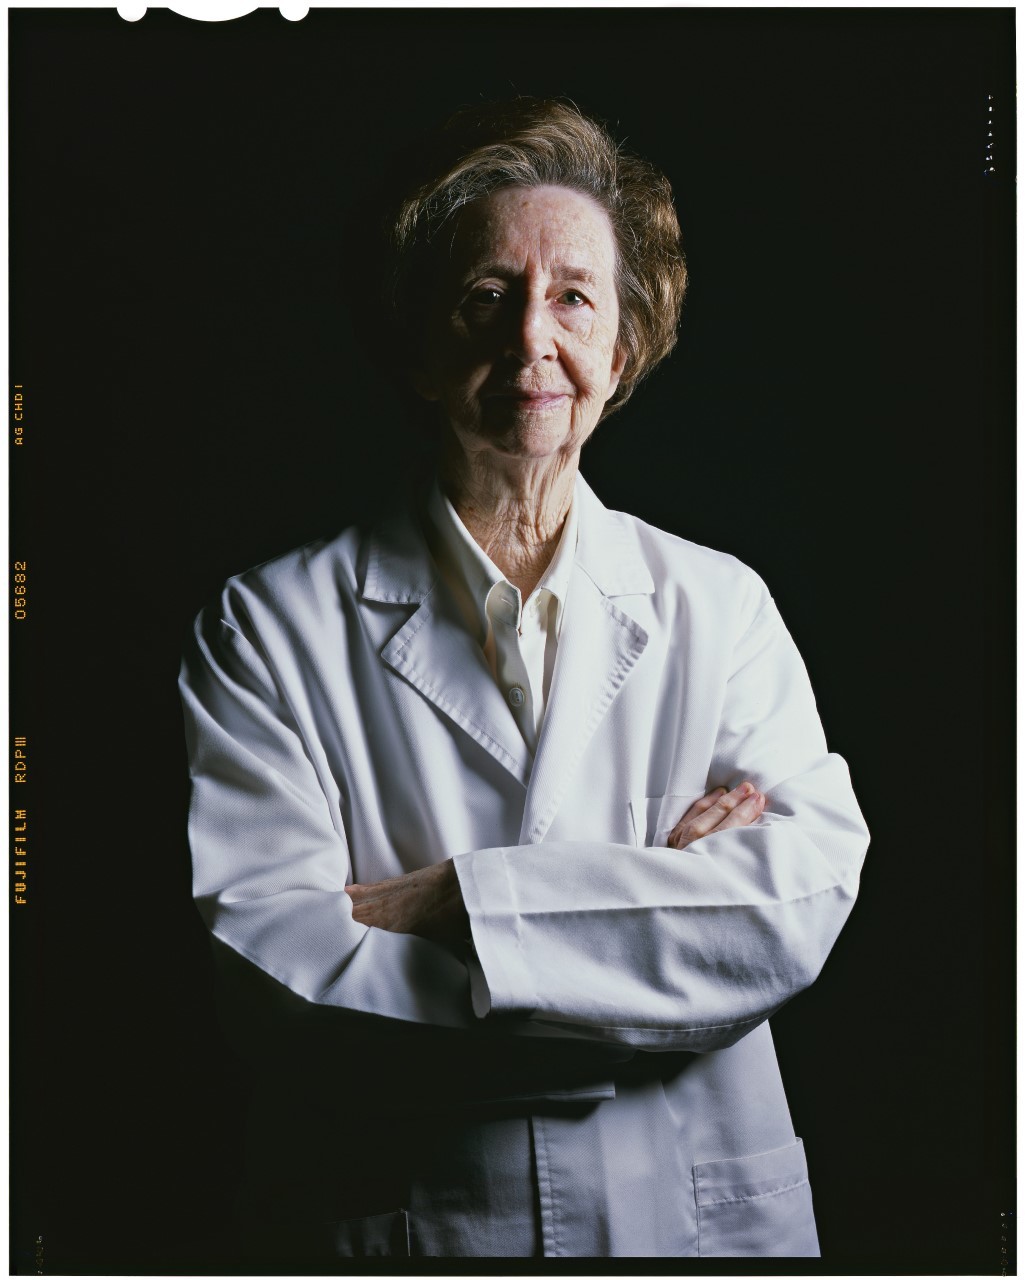 Scientist Margarita Salas passed away in 2019